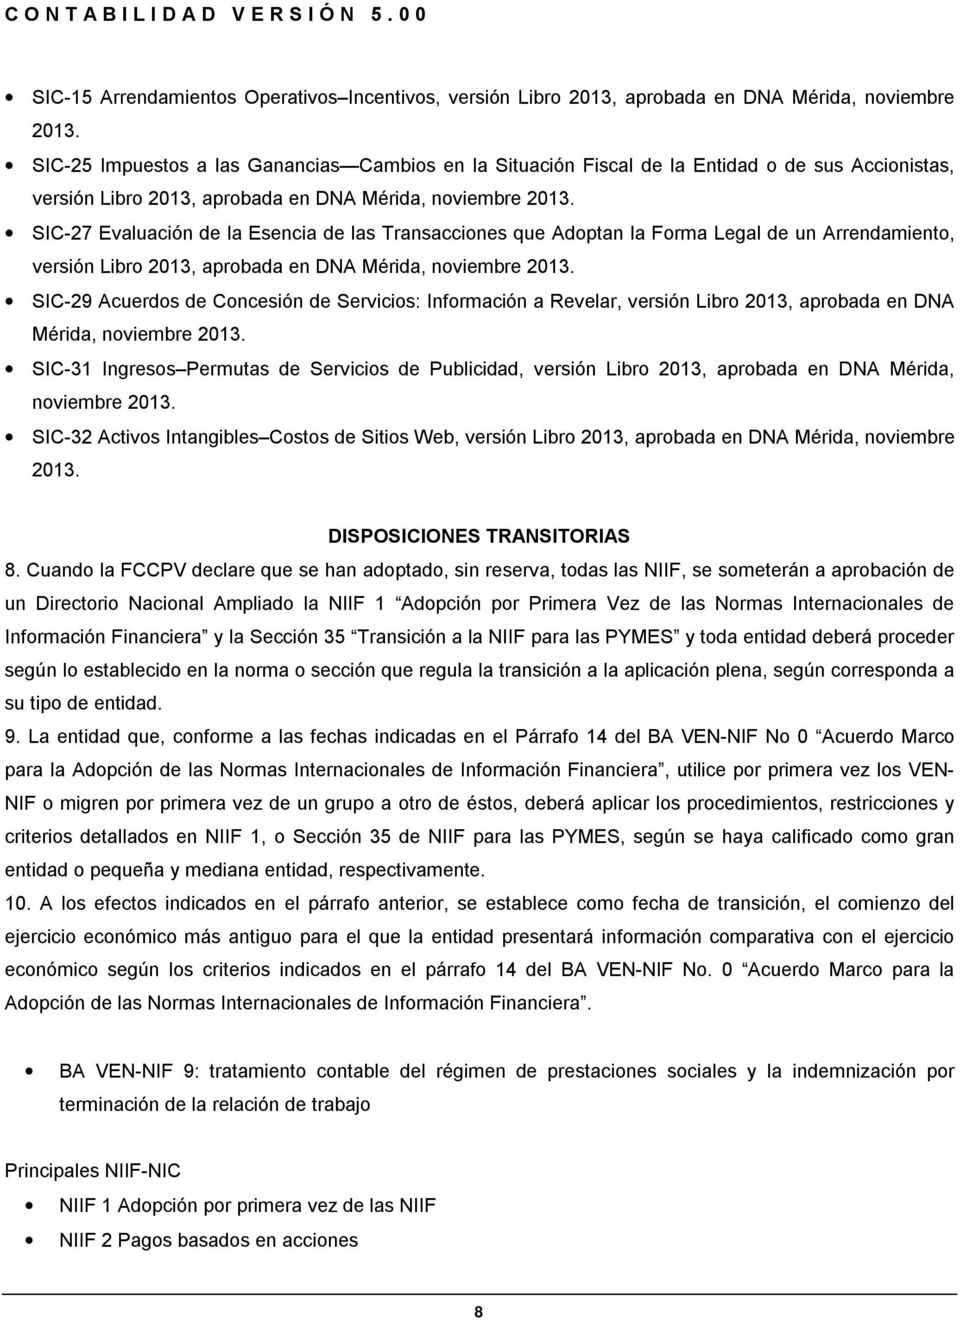 SIC-27 Evaluación de la Esencia de las Transacciones que Adoptan la Forma Legal de un Arrendamiento, versión Libro 2013, aprobada en DNA Mérida, noviembre 2013.